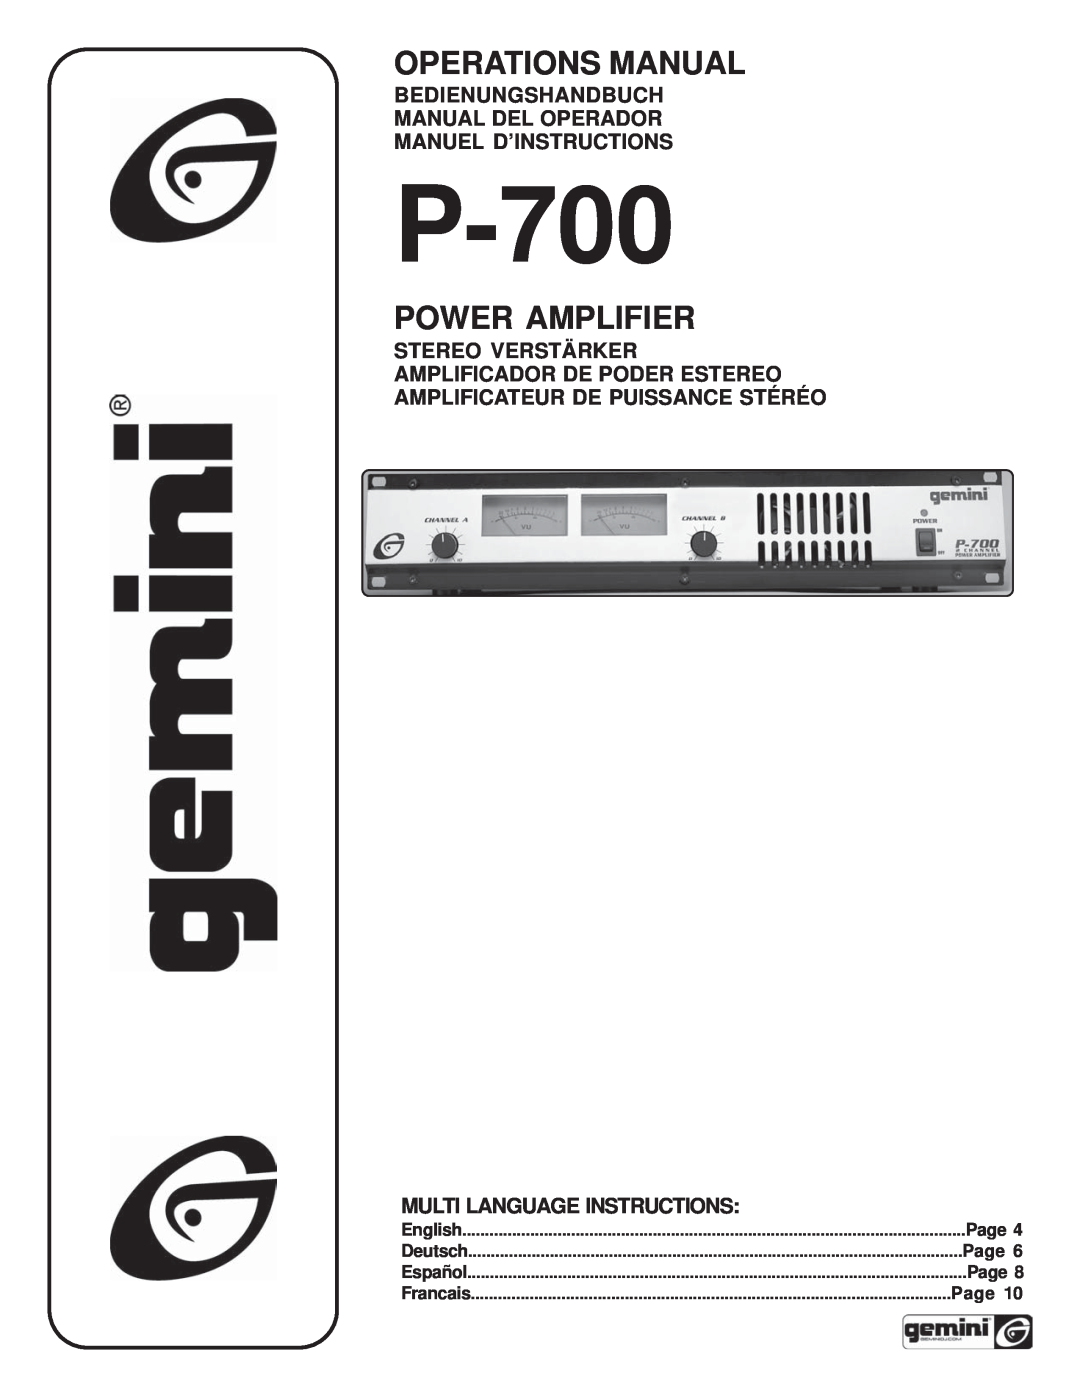 Gemini P-700 manual Bedienungshandbuch Manual Del Operador, Manuel D’Instructions, Amplificateur De Puissance Stéréo, Page 